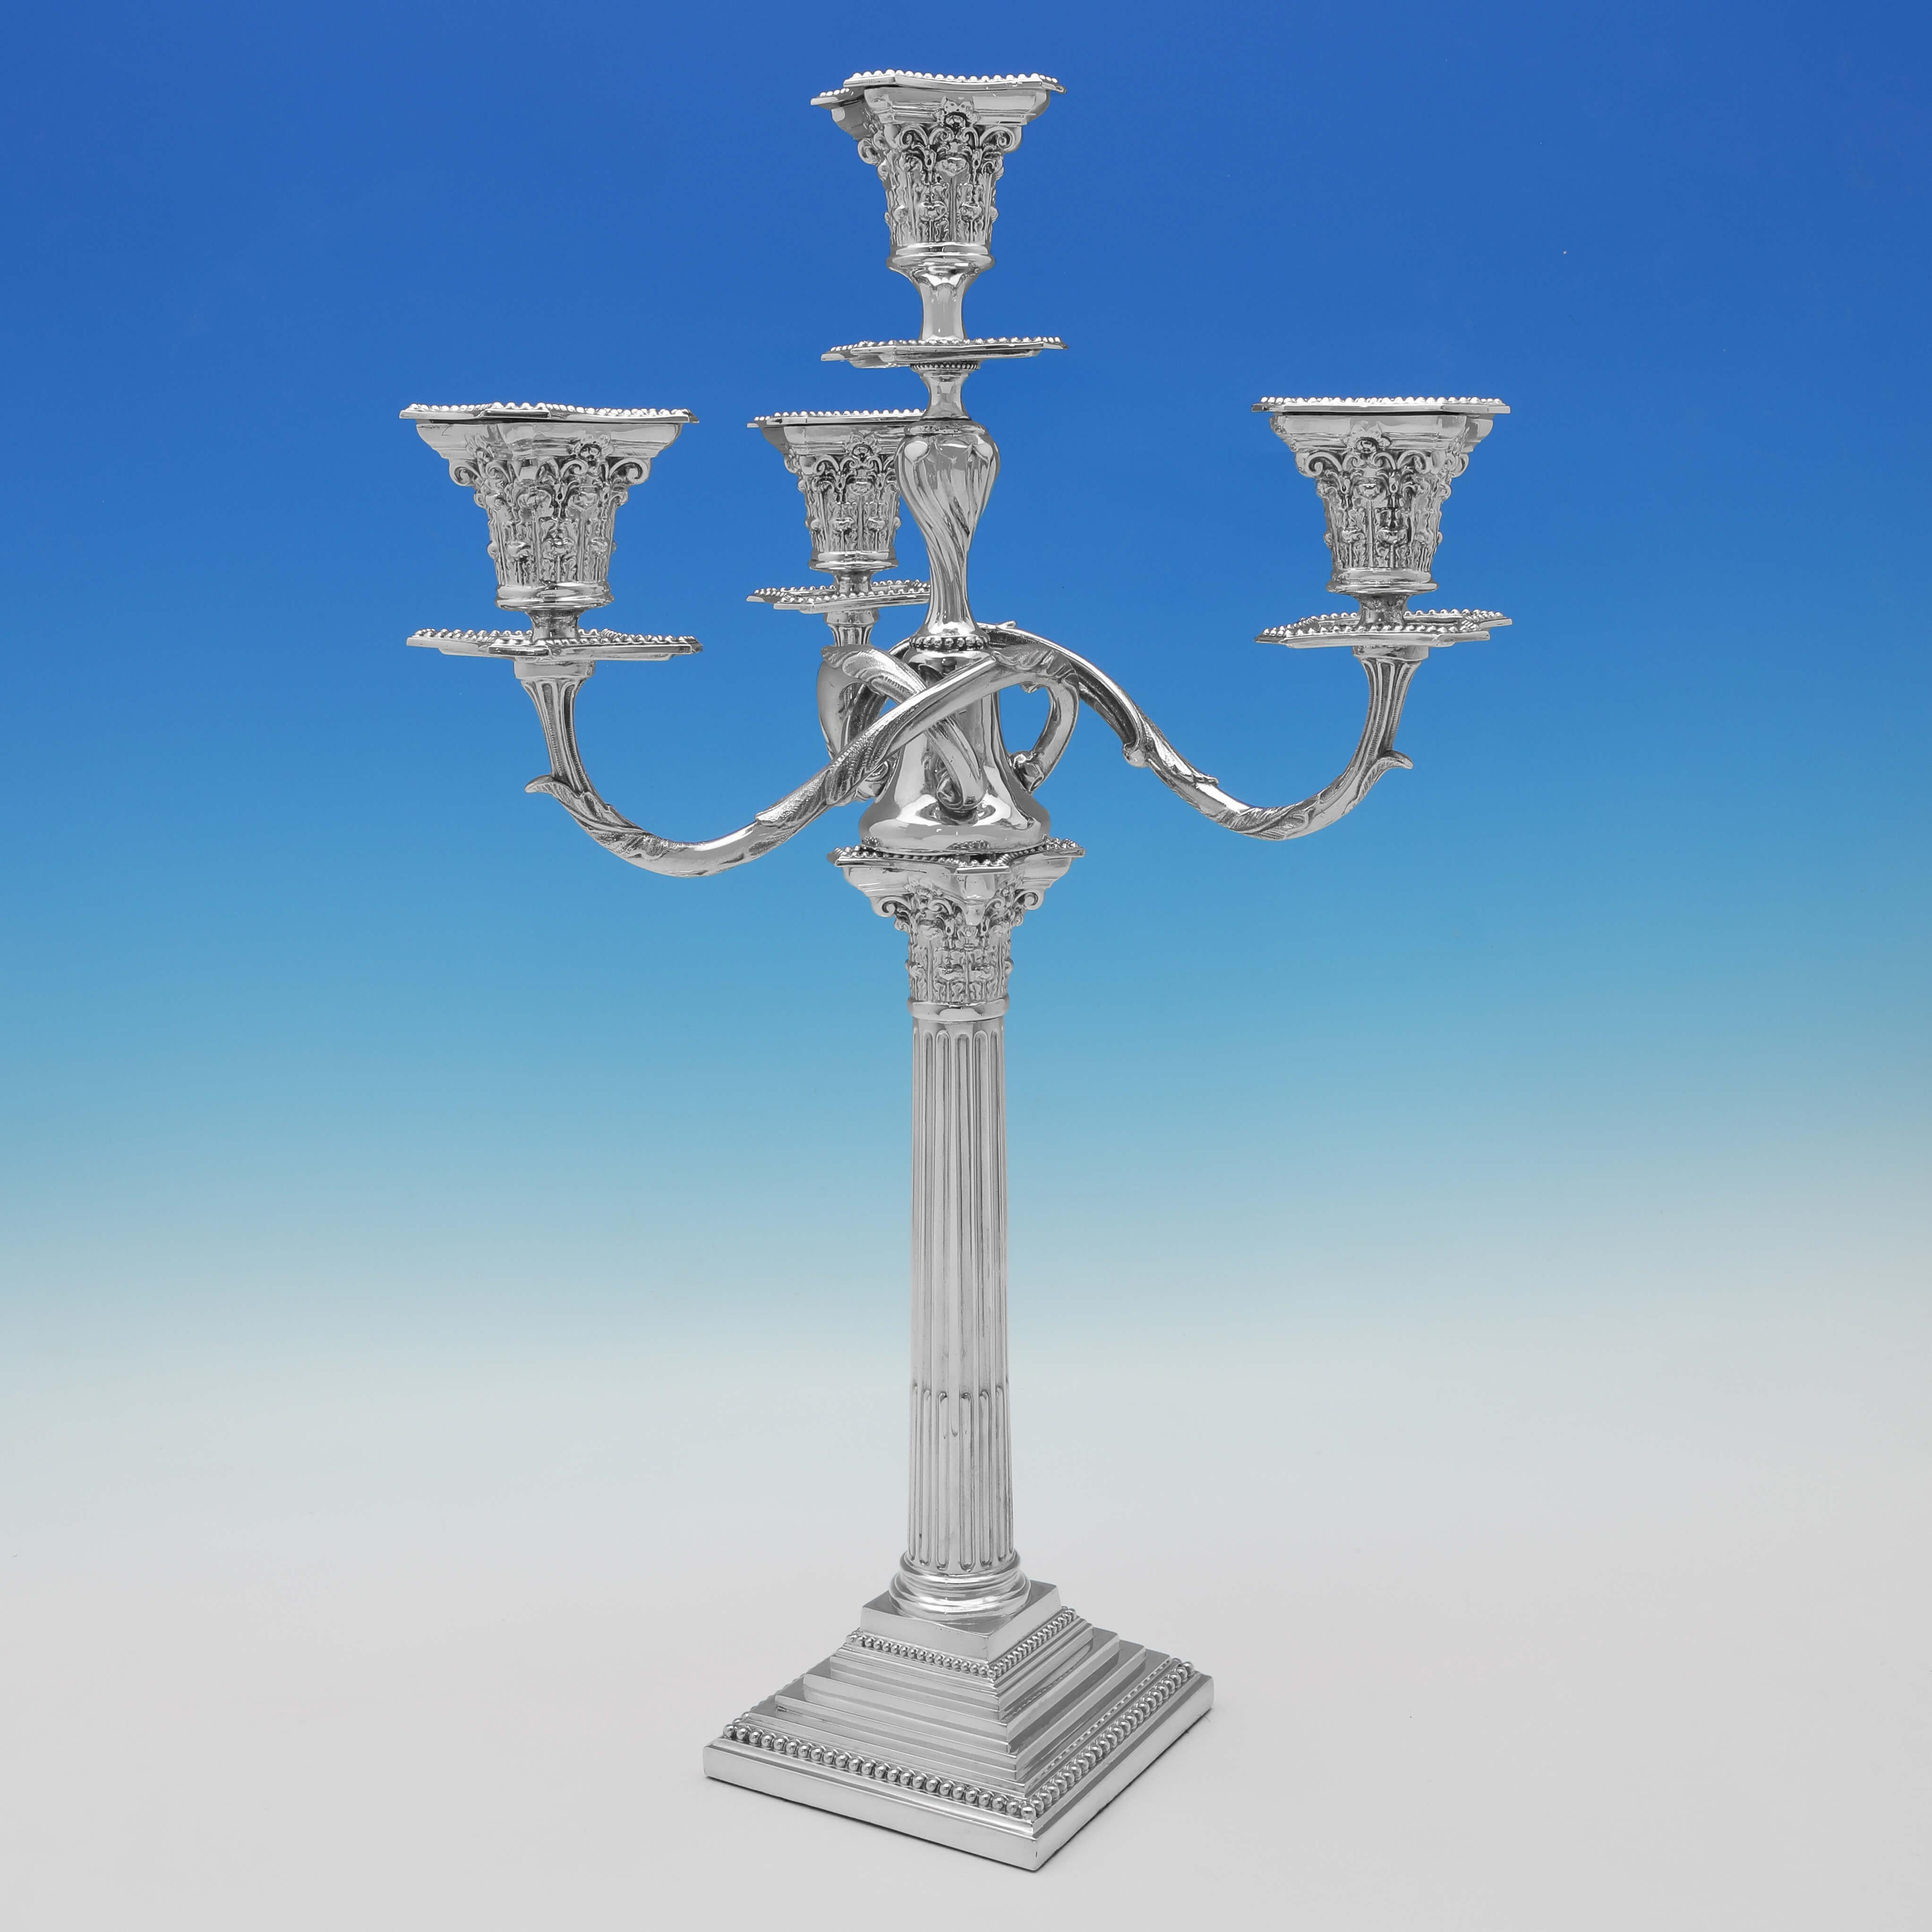 Dieses stilvolle Paar antiker Silberblechkandelaber im korinthischen Stil wurde um 1890 von Spurrier & Company hergestellt. Jeder Kandelaber fasst 4 Kerzen und hat einen gestuften Sockel mit Perlenrand.

 Jeder Kandelaber ist 55 cm (21,5